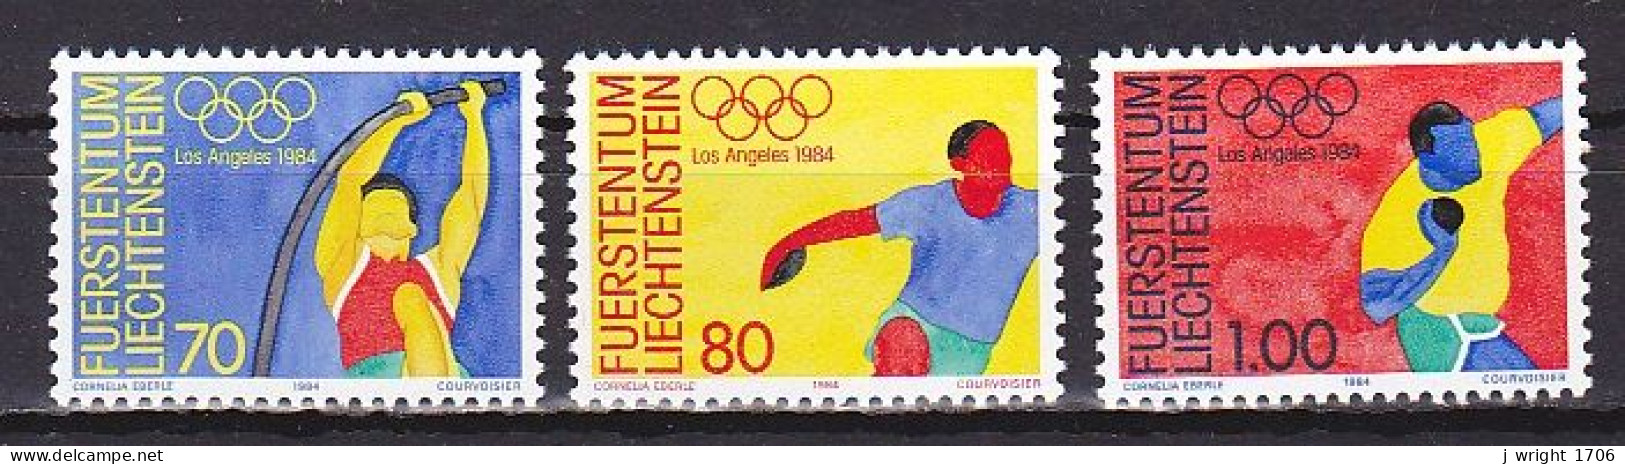 Liechtenstein, 1984, Olympic Summer Games, Set, MNH - Unused Stamps